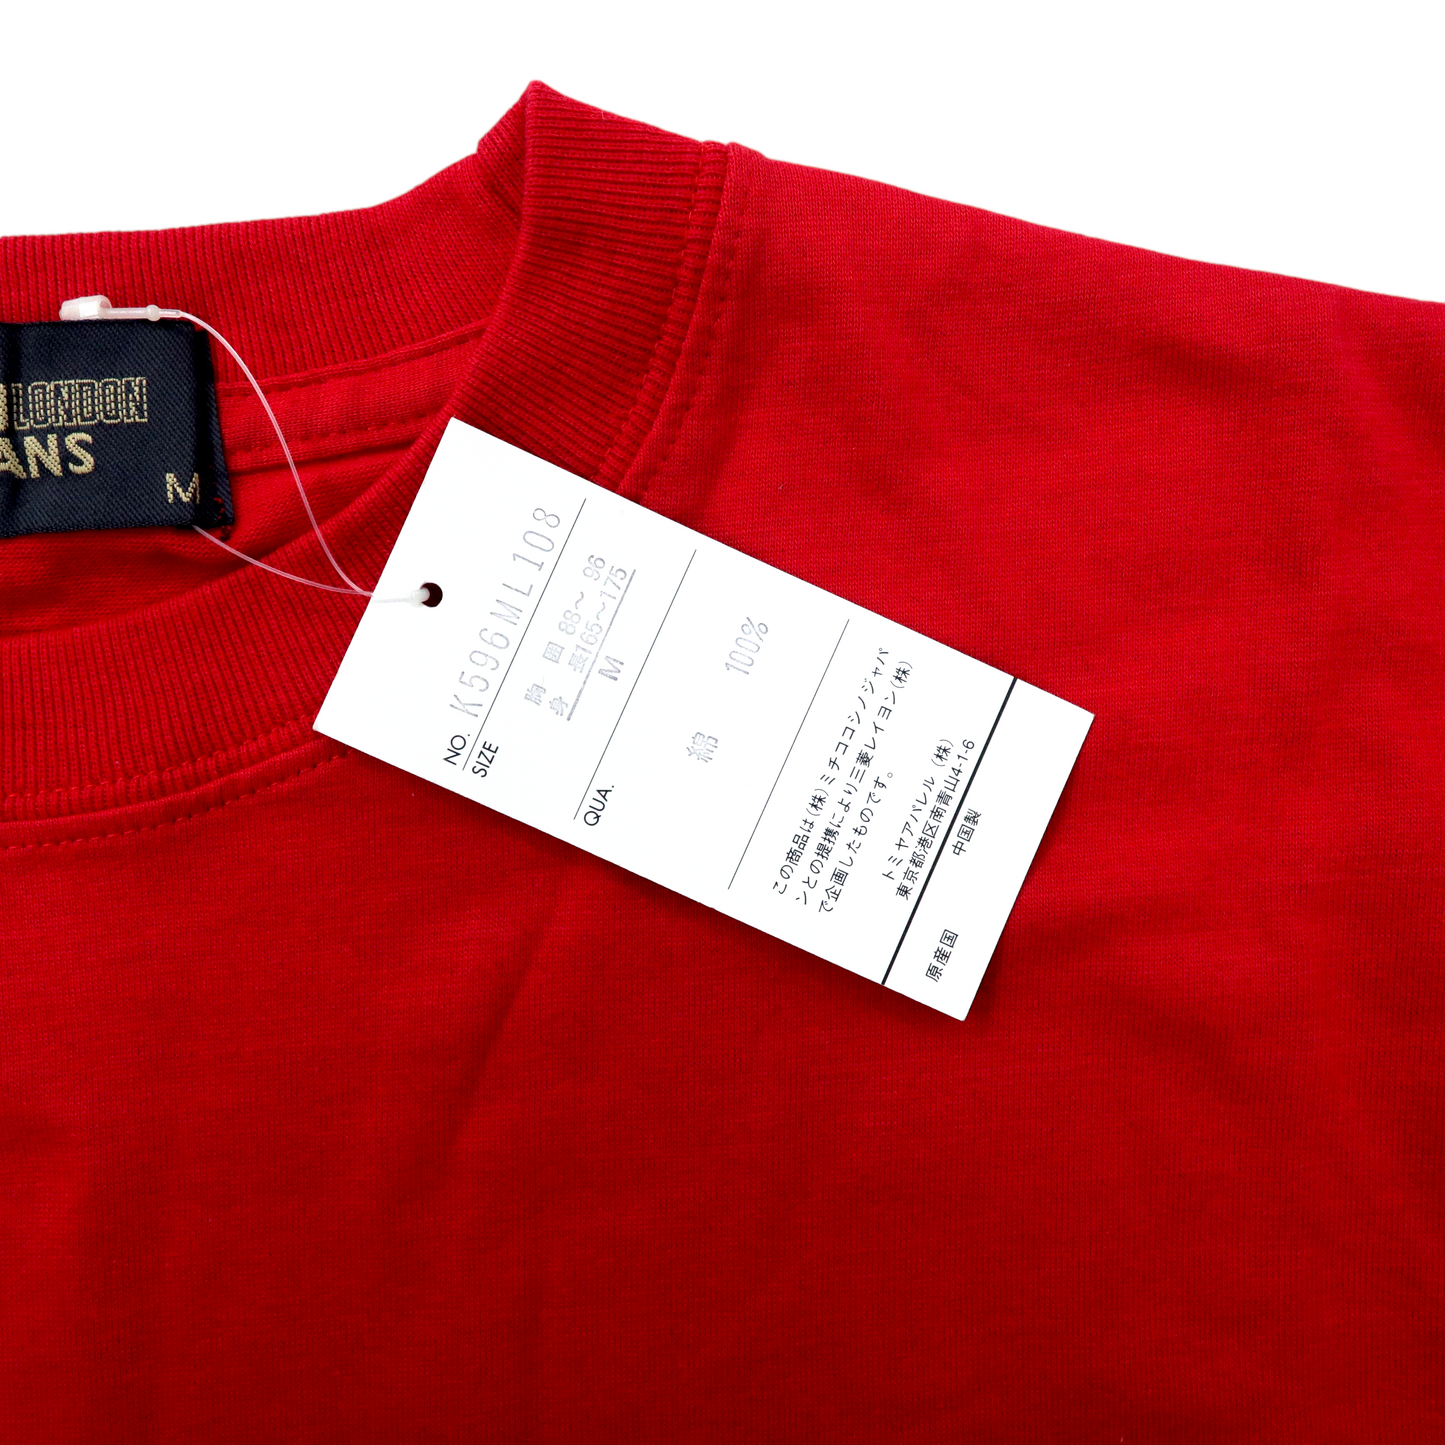 MICHIKO LONDON JEANS ビッグサイズ 90年代 ロゴプリントTシャツ M レッド コットン ユニオンジャック 未使用品